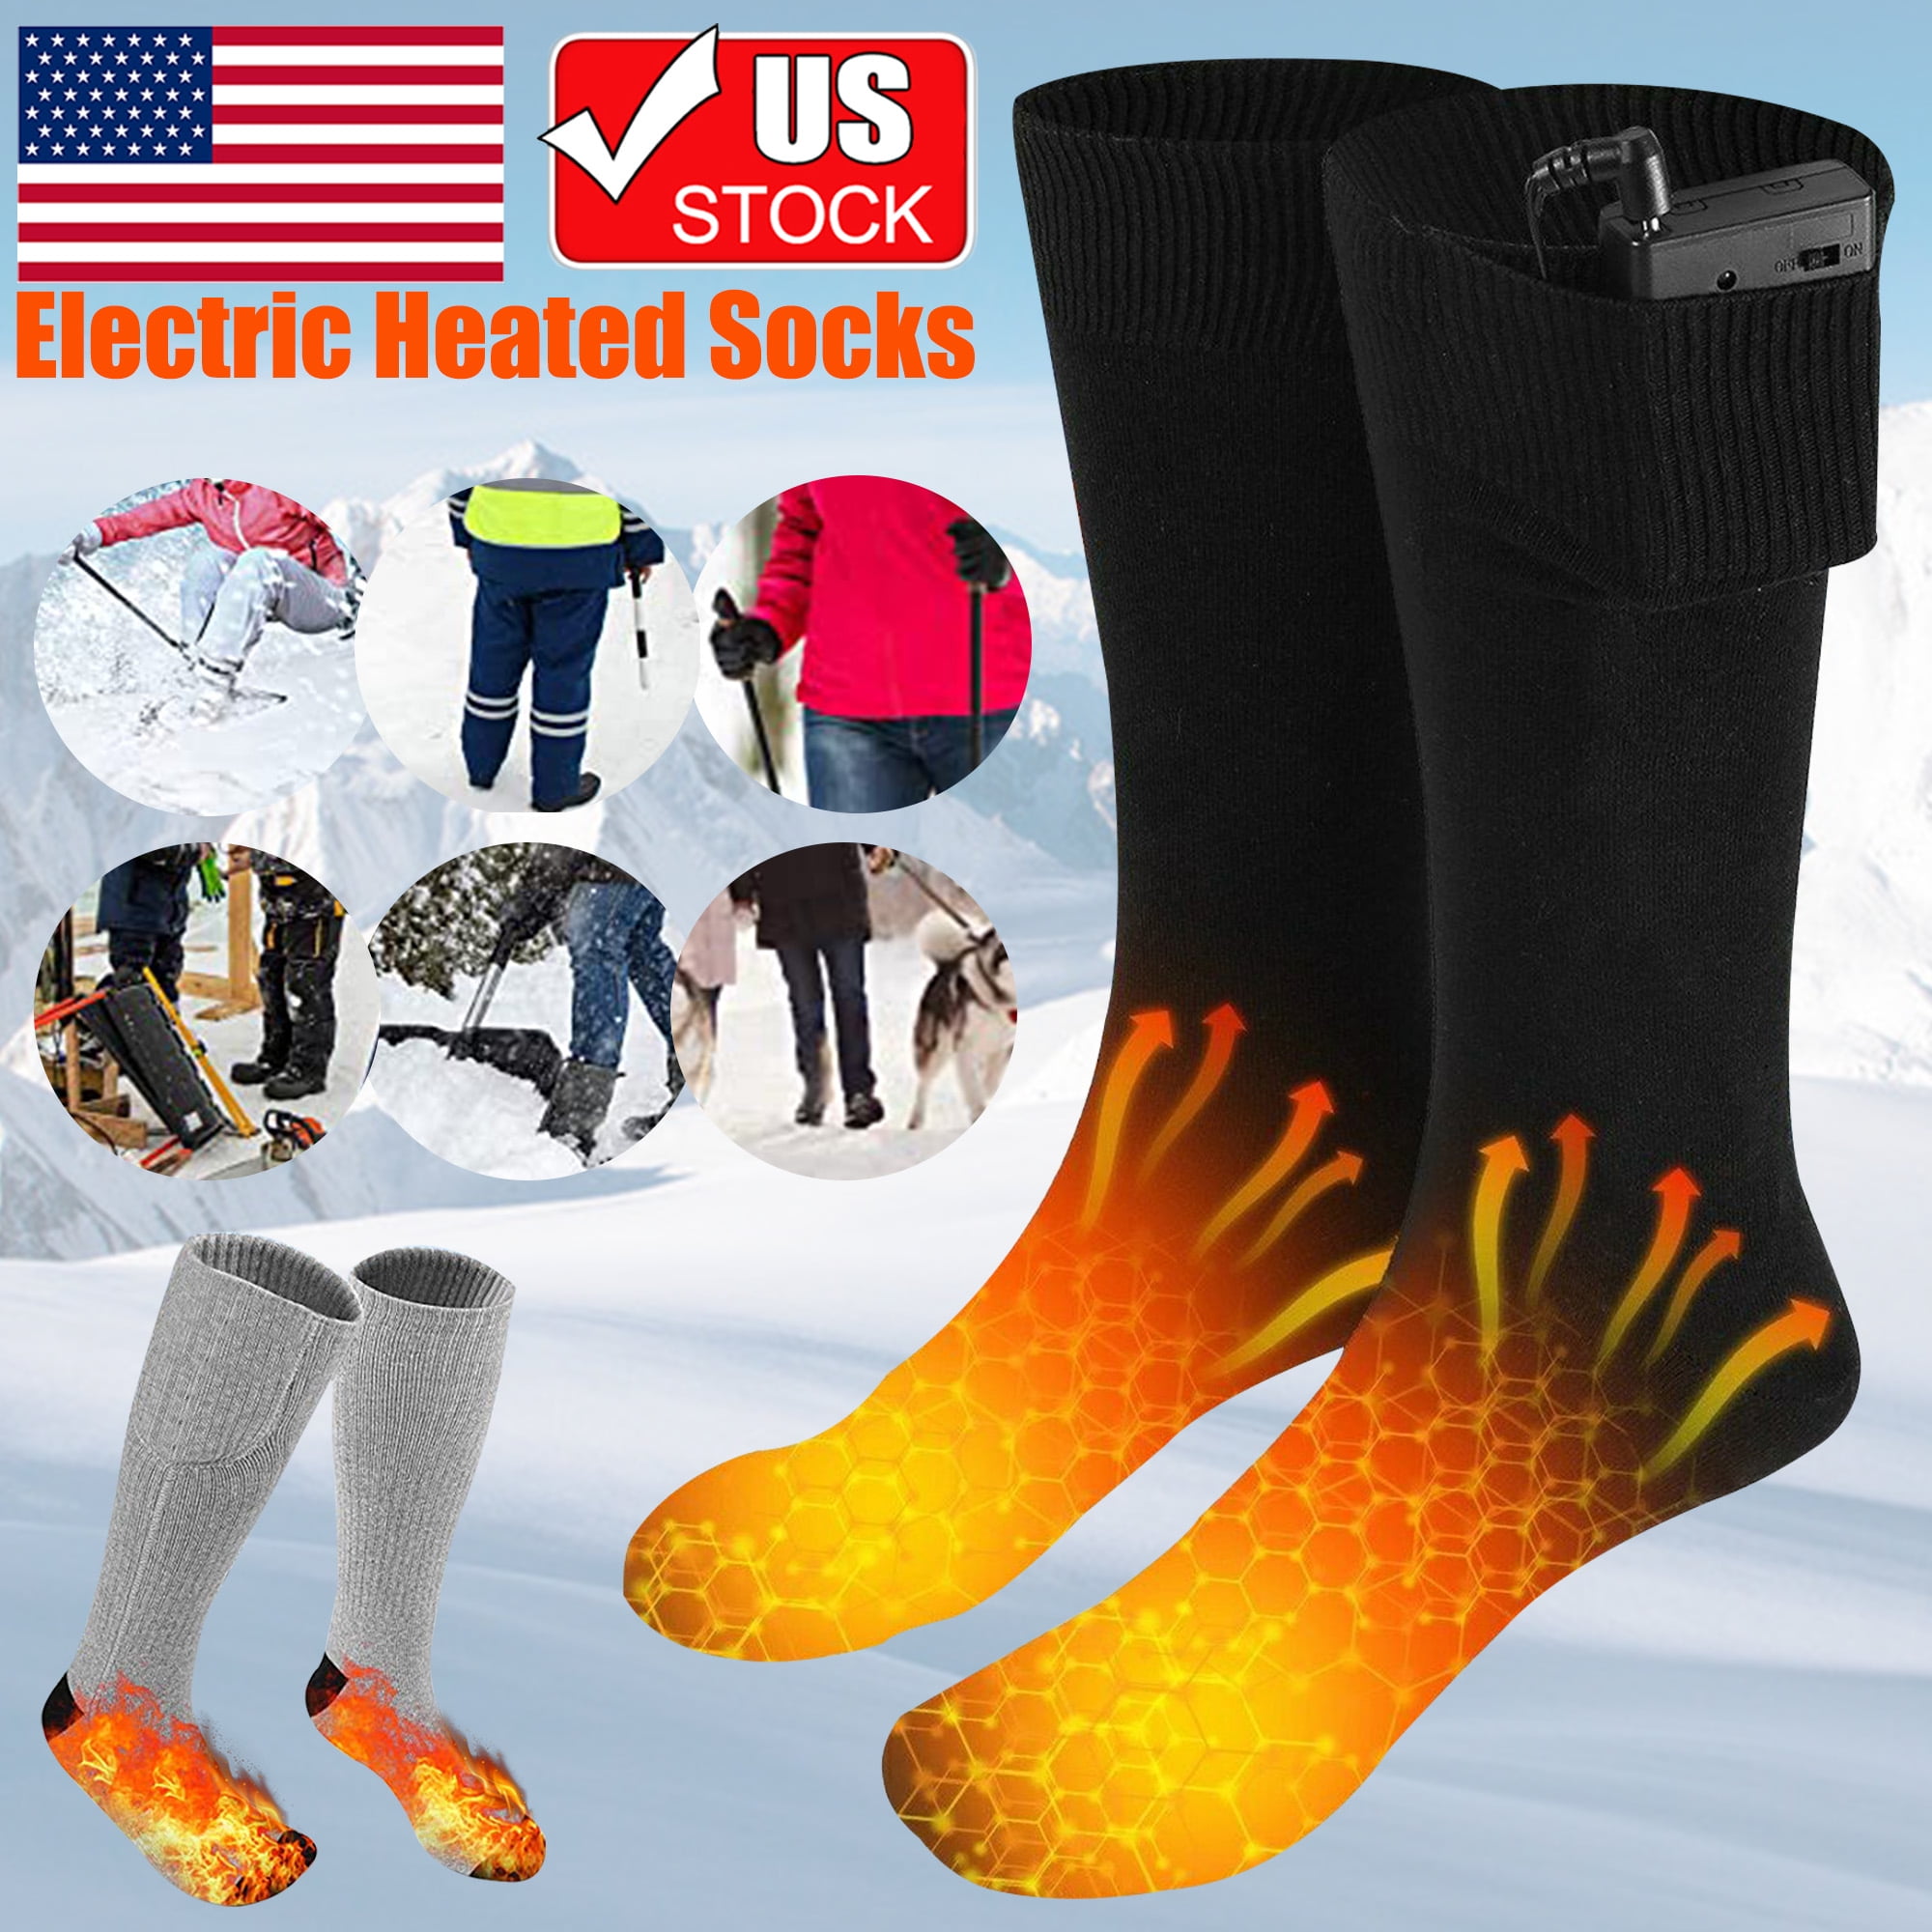 Unisex Electric Heated Socks Rechargeable Battery Power Foot Winter Warmer Socks 